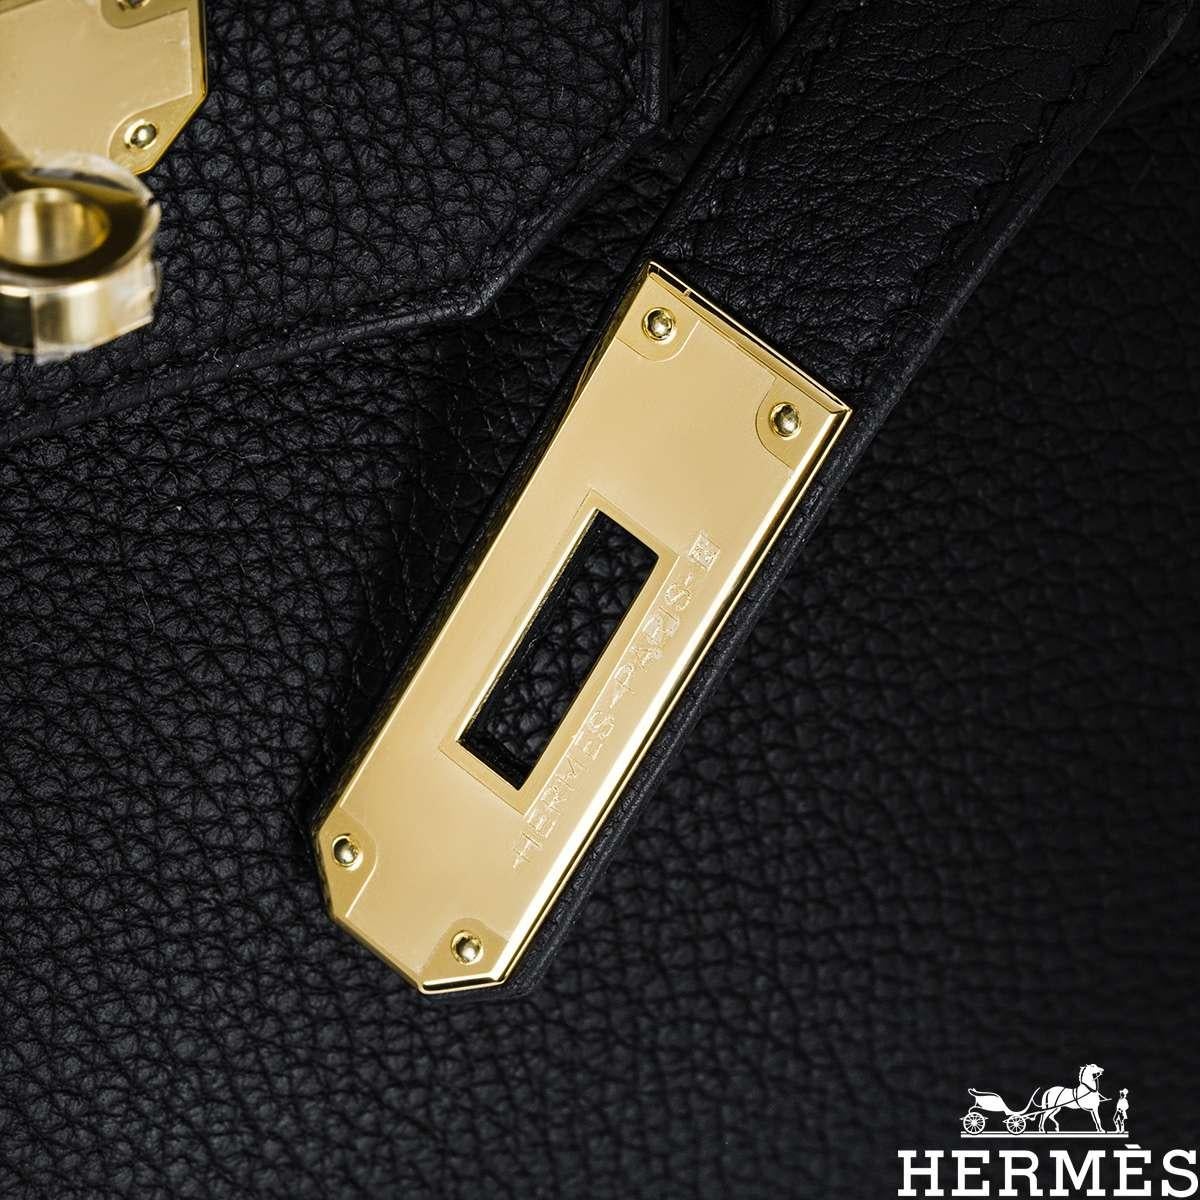 Hermès Birkin 30cm Noir Veau Togo GHW 10